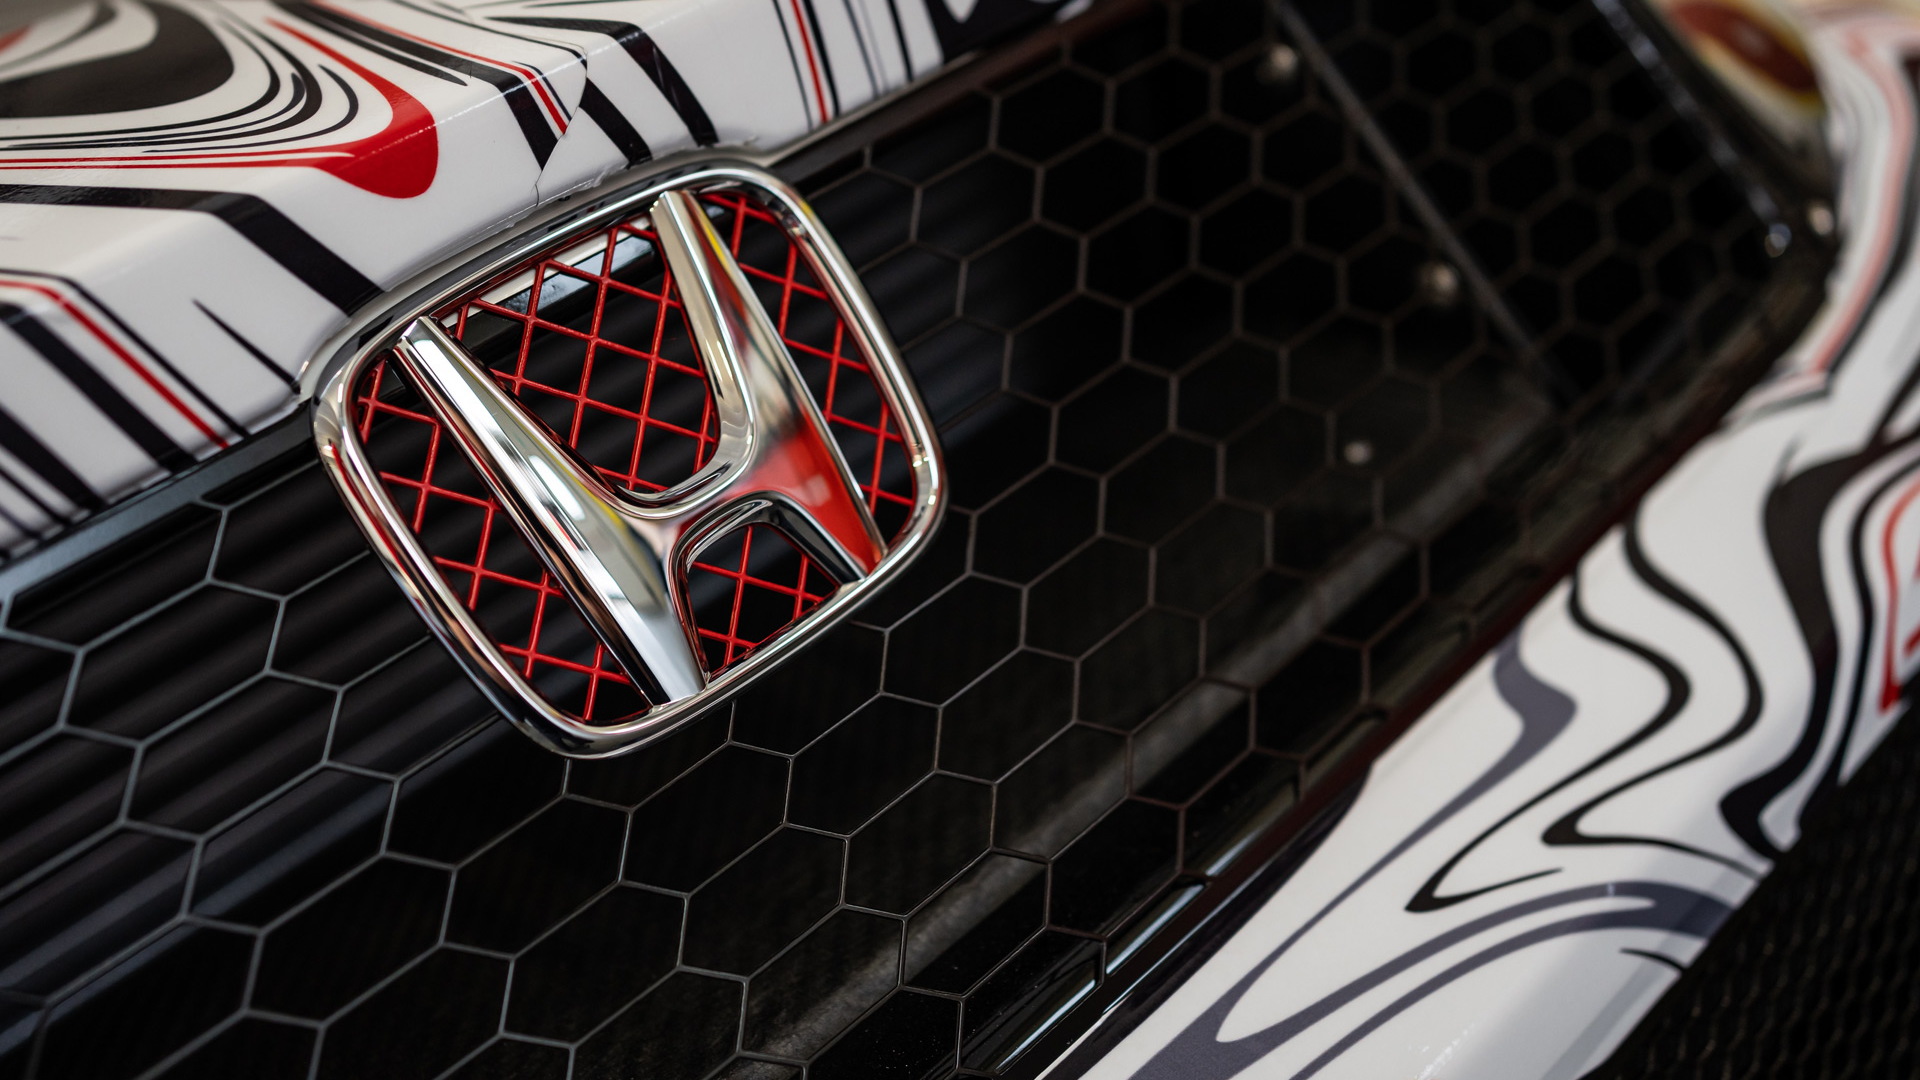 Teaser for 2023 Honda Civic Type R FL5 TCR race car